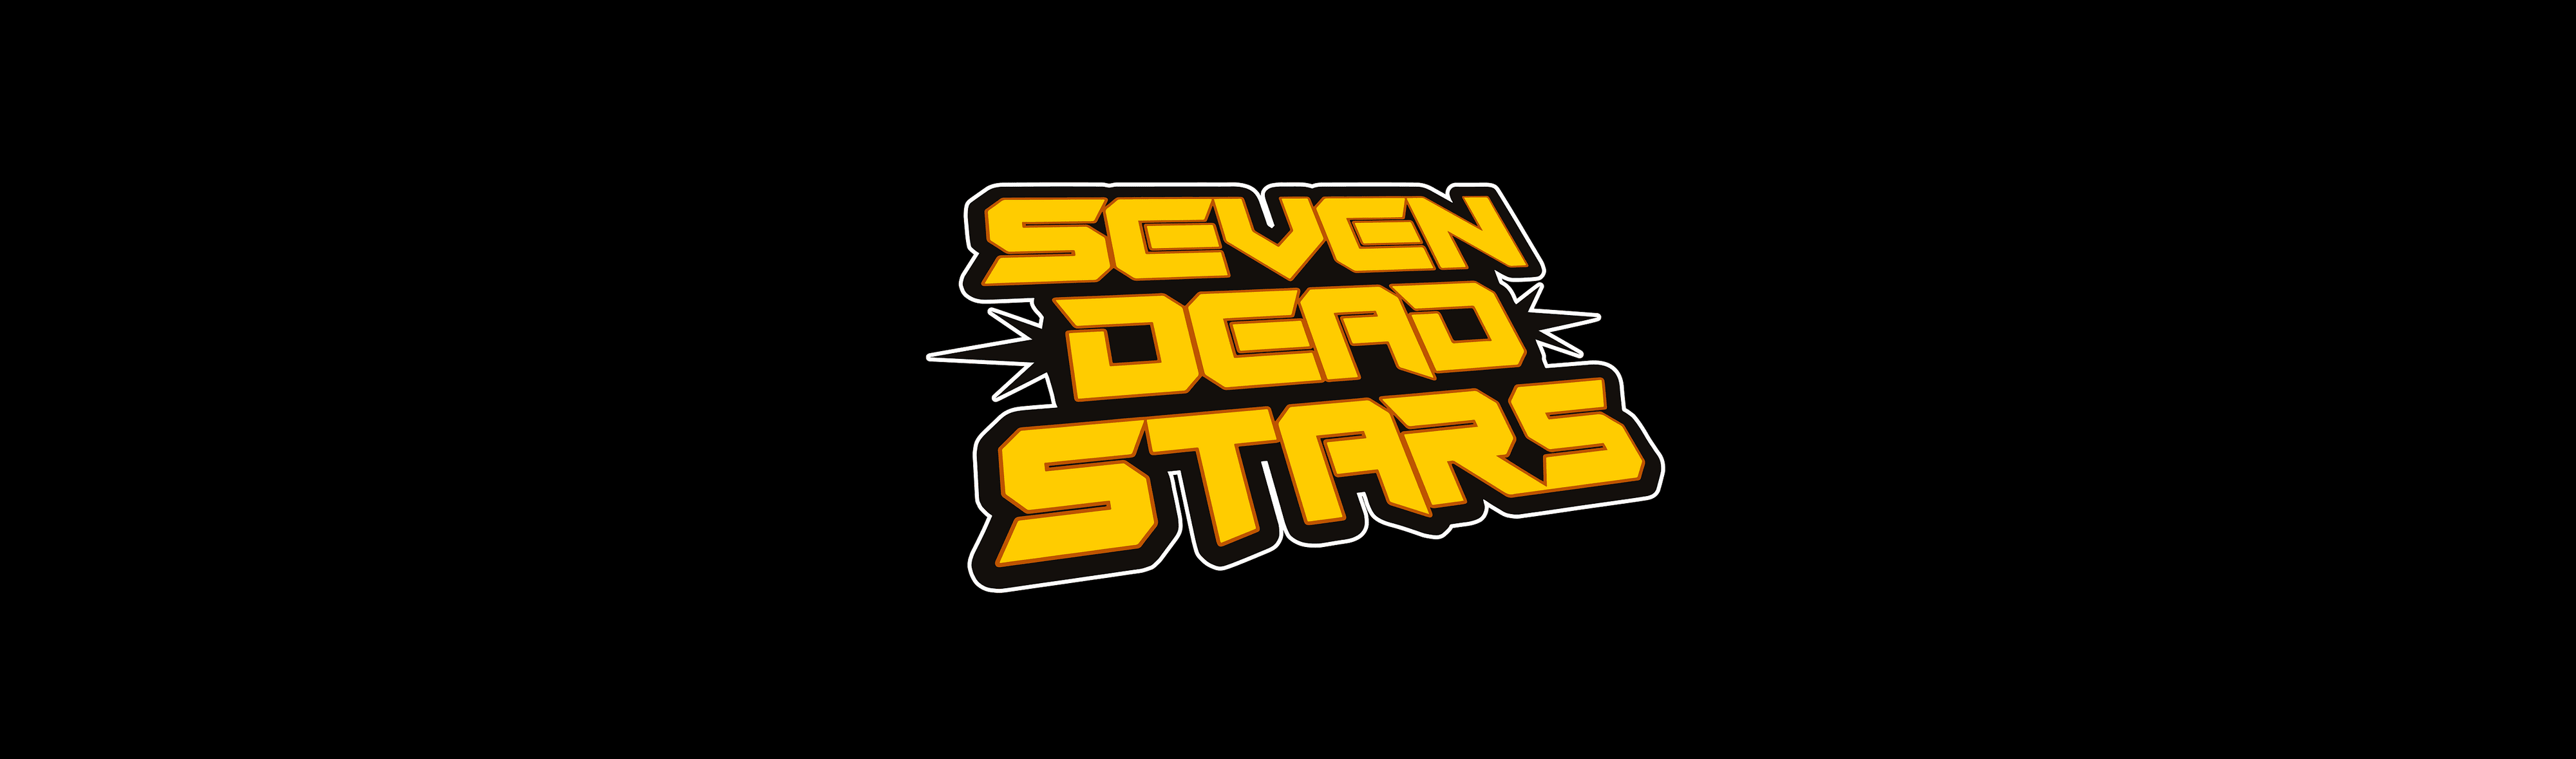 SevenDeadStars 横幅